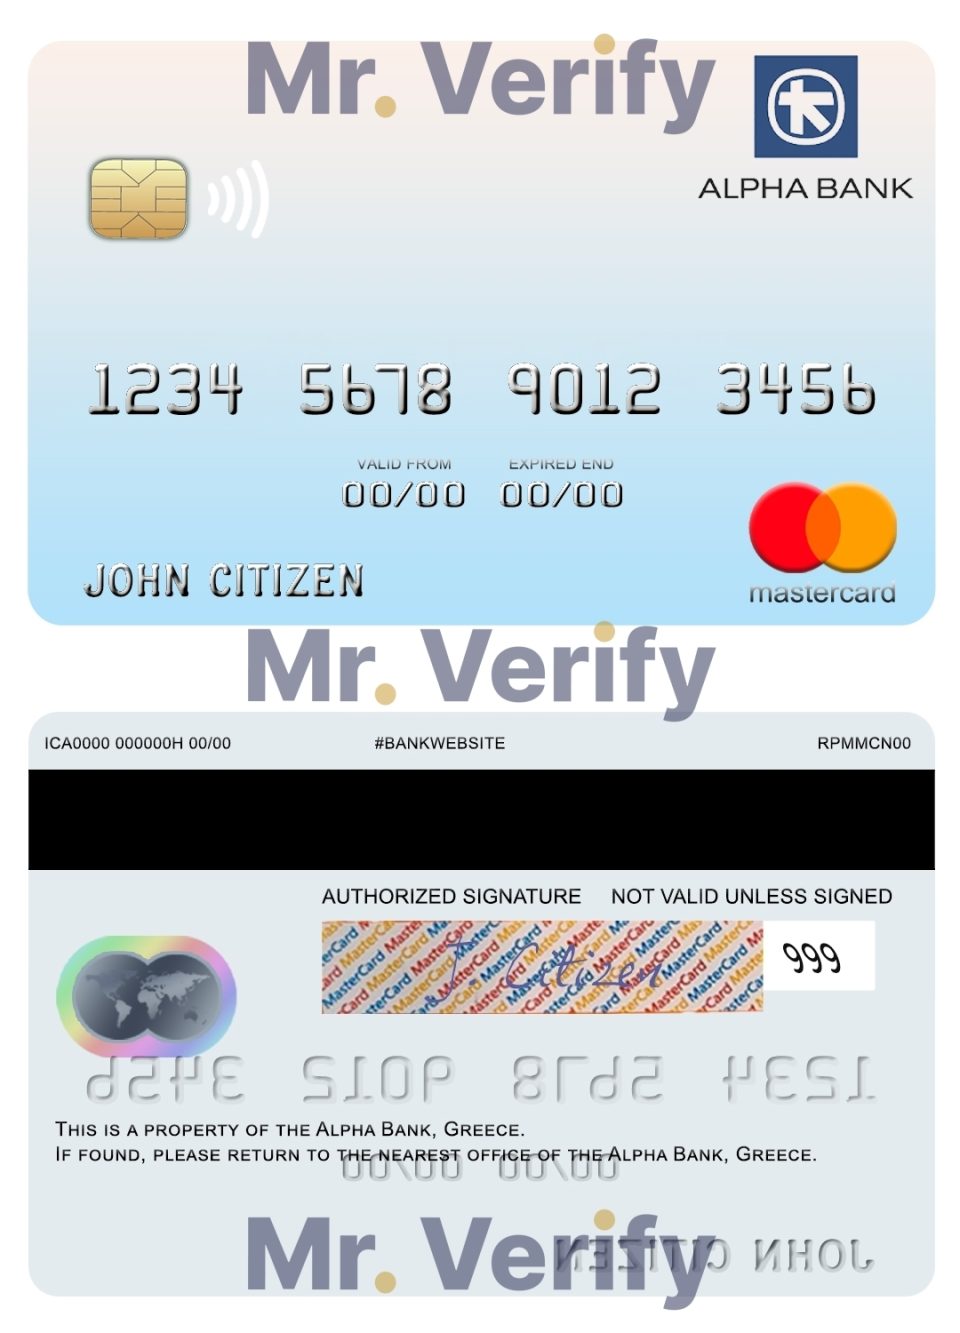 Editable Greece Alpha Bank mastercard Templates in PSD Format